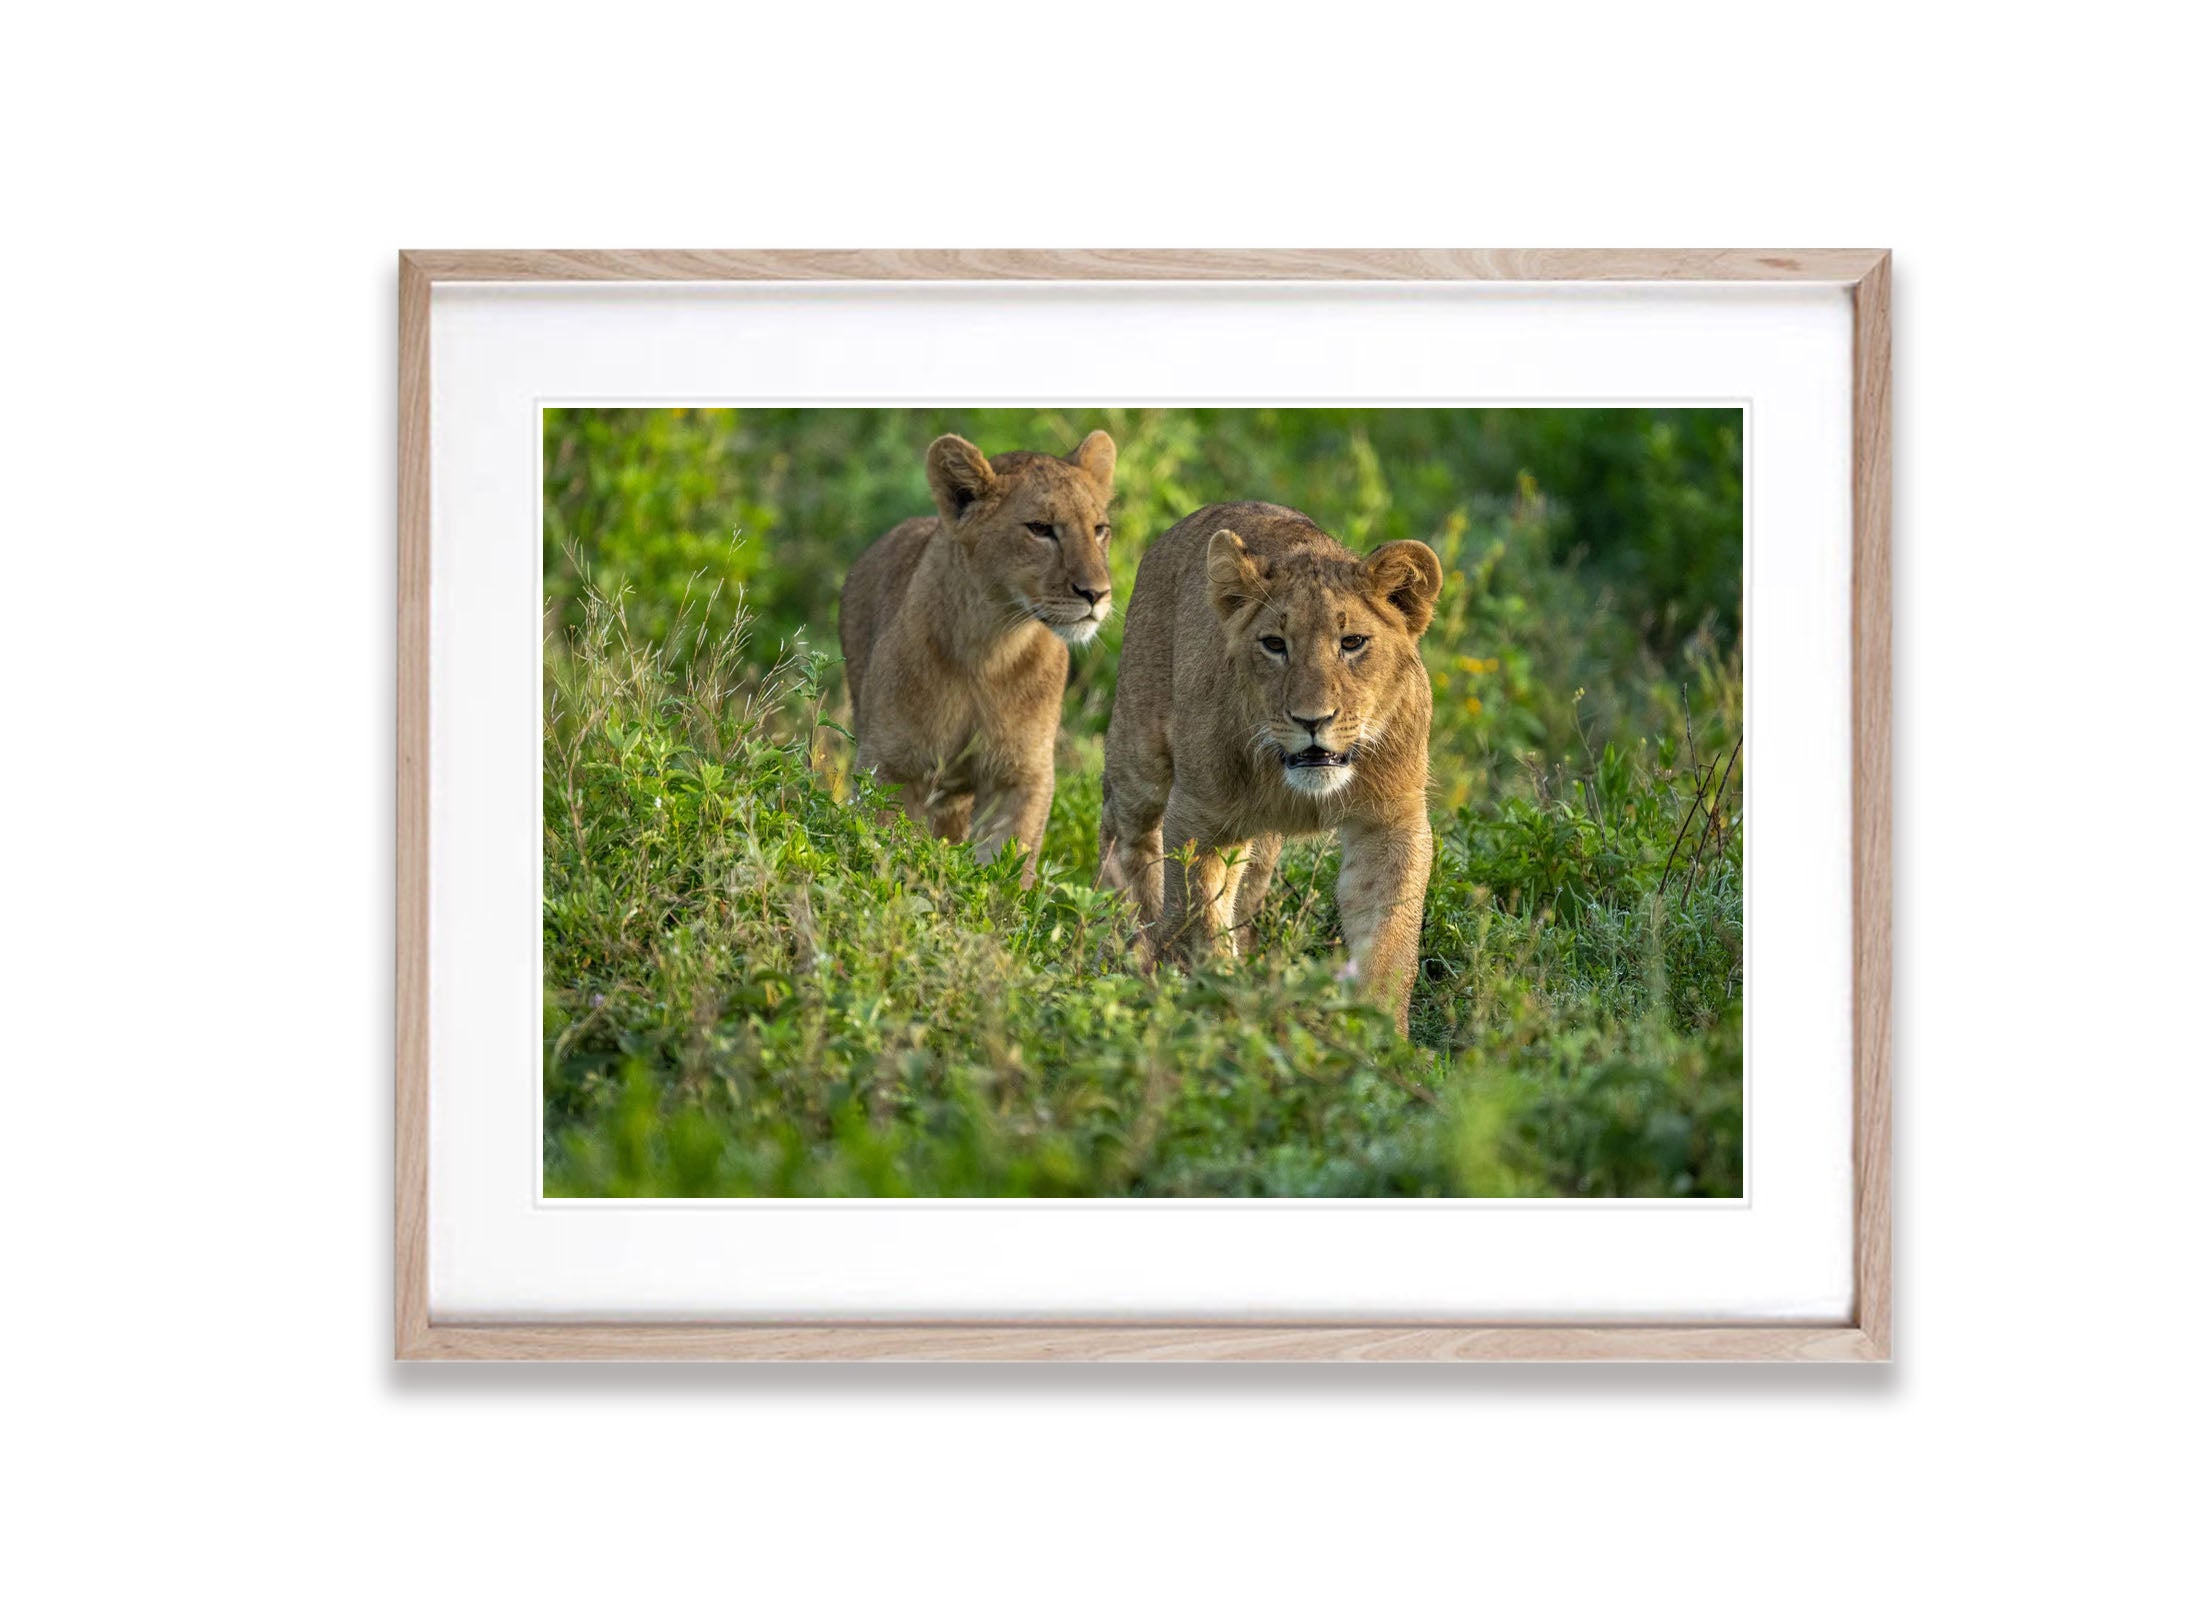 Young Lions taking a walk, Tanzania